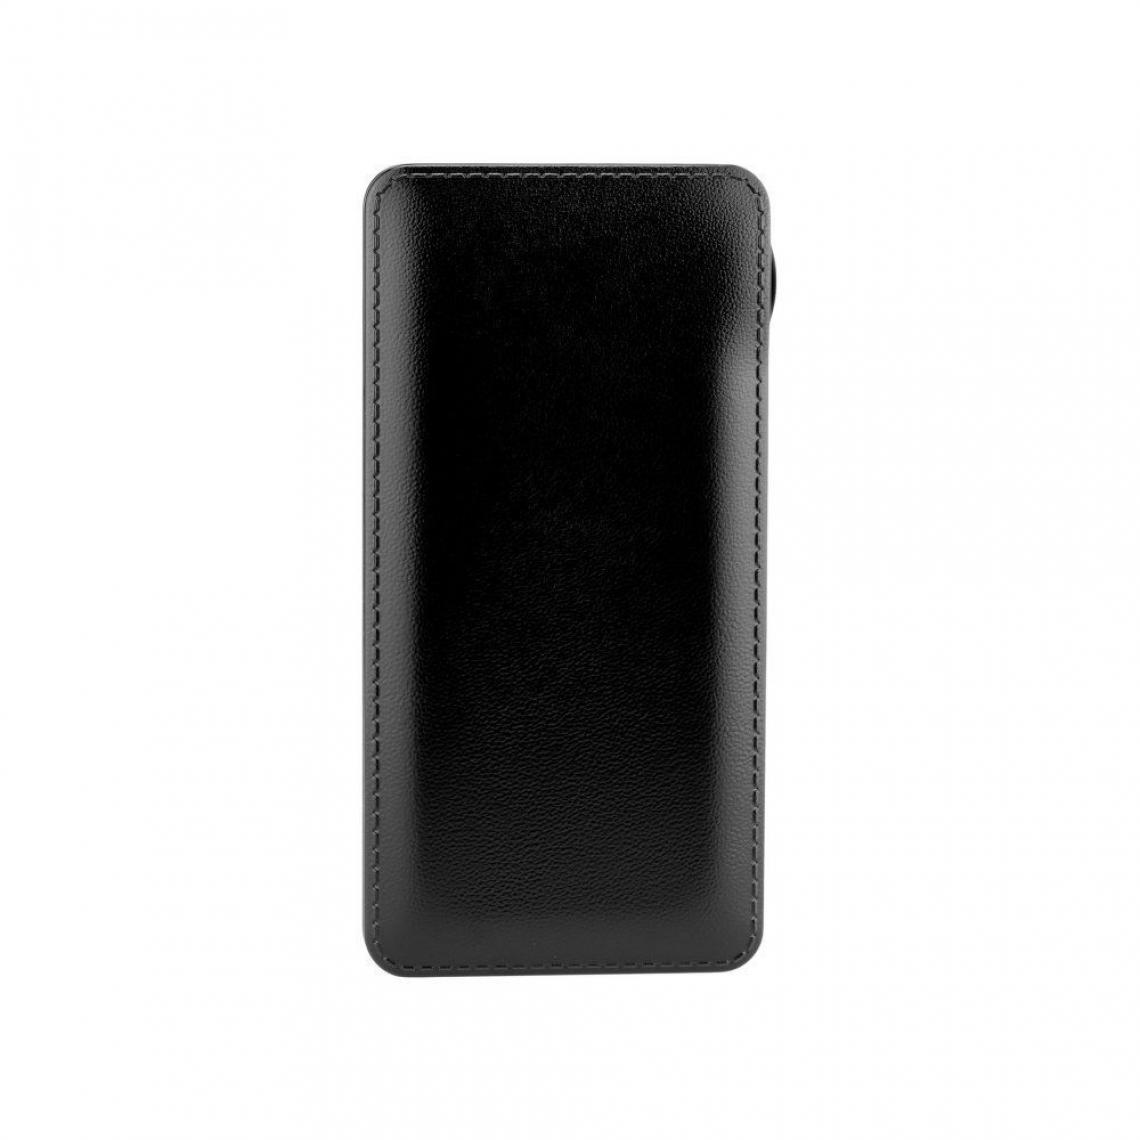 Ozzzo - Chargeur batterie externe 20000 mAh powerbank ozzzo noir pour APPLE IPHONE 6 6S - Autres accessoires smartphone